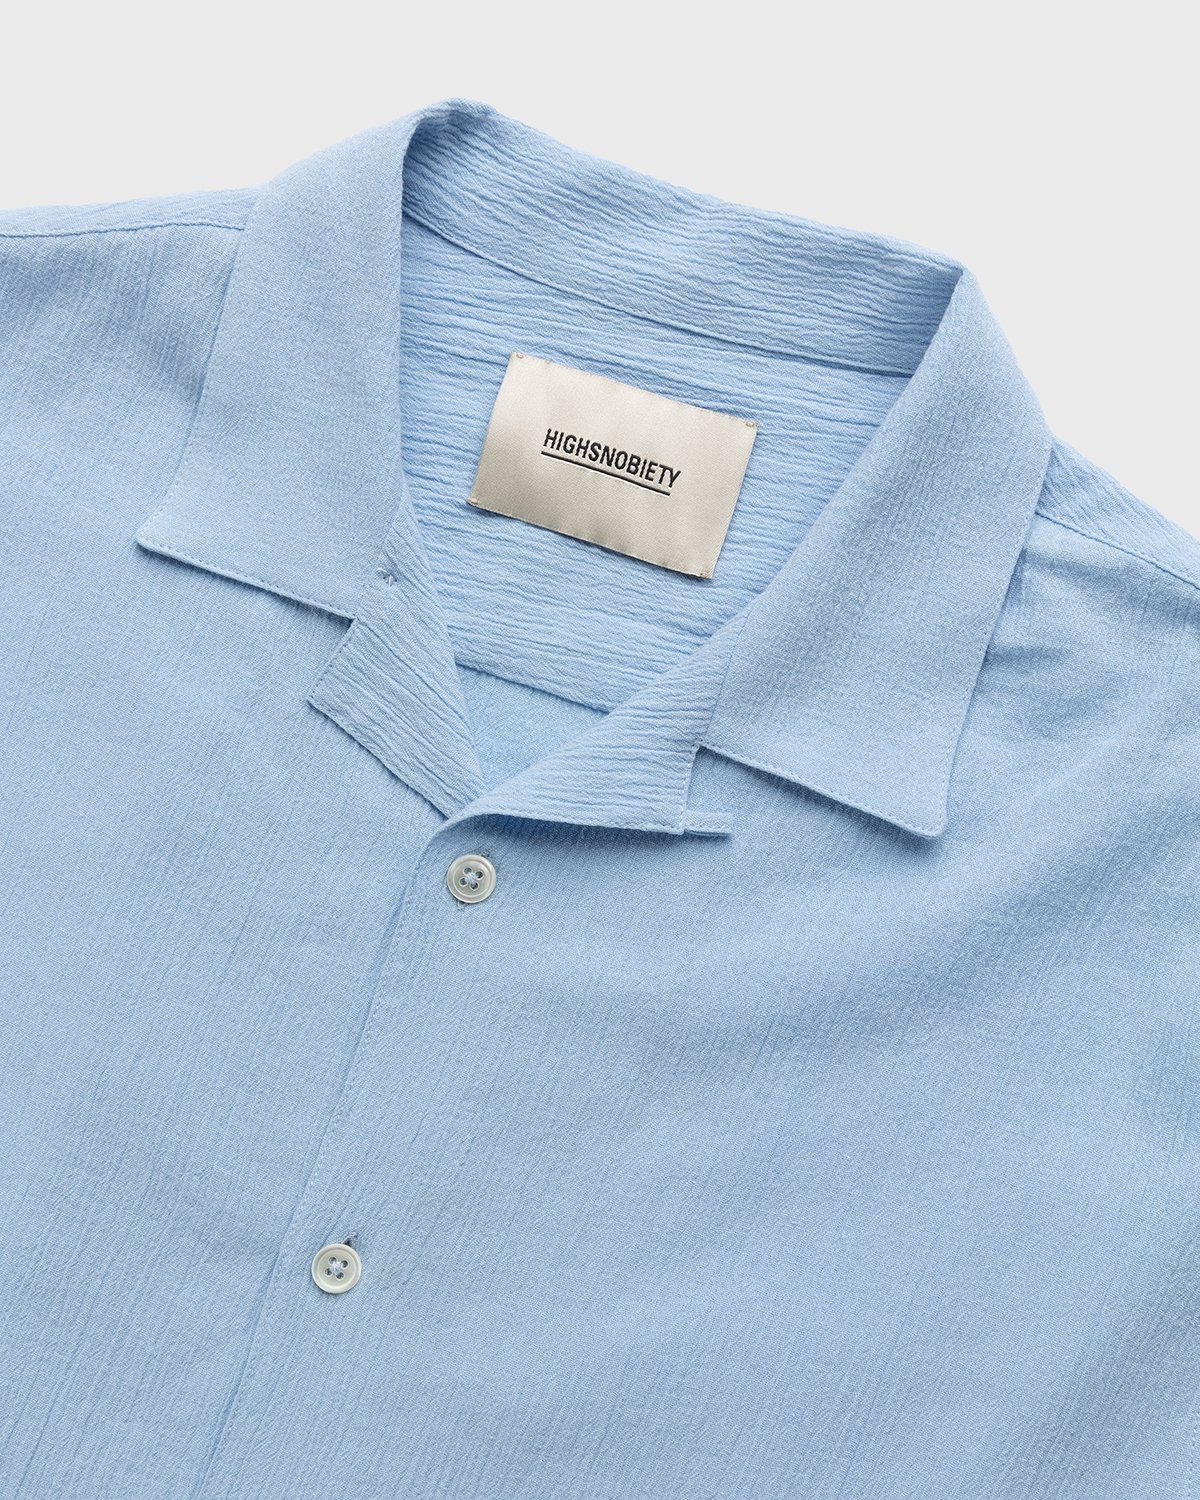 Highsnobiety - Crepe Short Sleeve Shirt Sky Blue - Clothing - Blue - Image 3